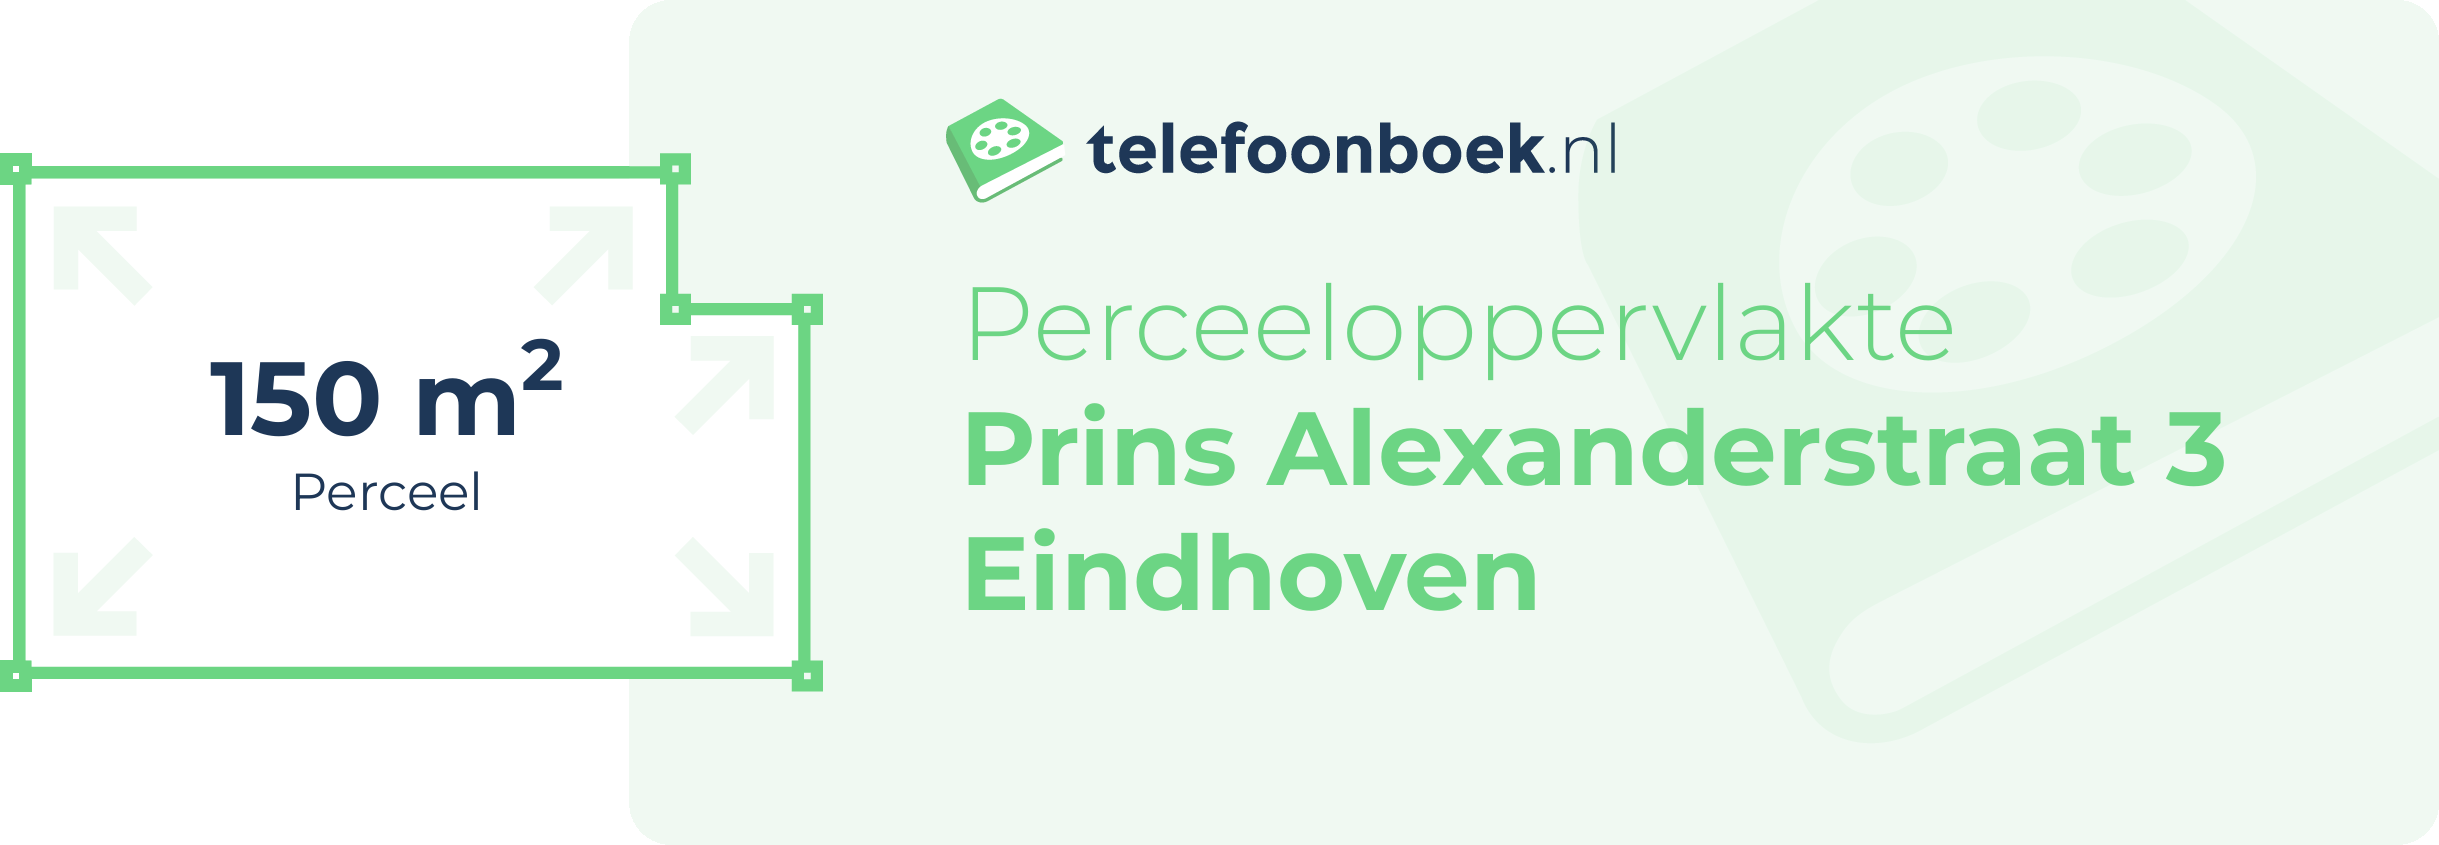 Perceeloppervlakte Prins Alexanderstraat 3 Eindhoven